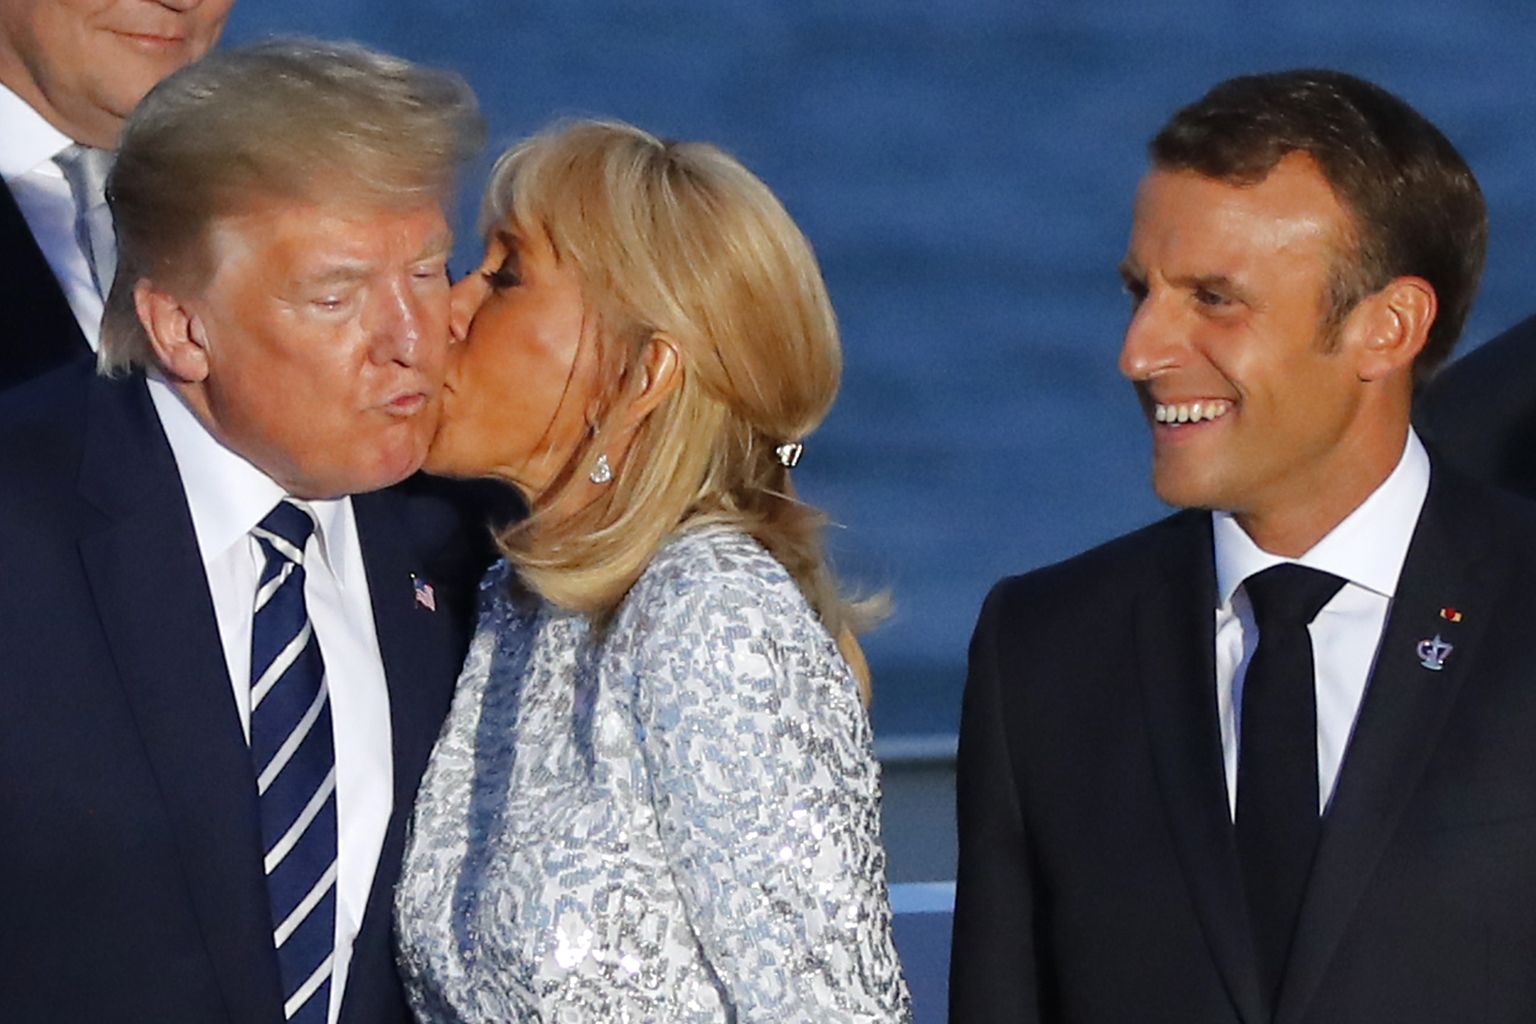 Prantsuse president Emmanuel Macron (paremal) vaatamas 25. augustil 2019, kuidas ta naine Brigitte Macron suudleb USA presidenti Donald Trumpi G7 riikide tippkohtumisel Prantsusmaal Biarritzis